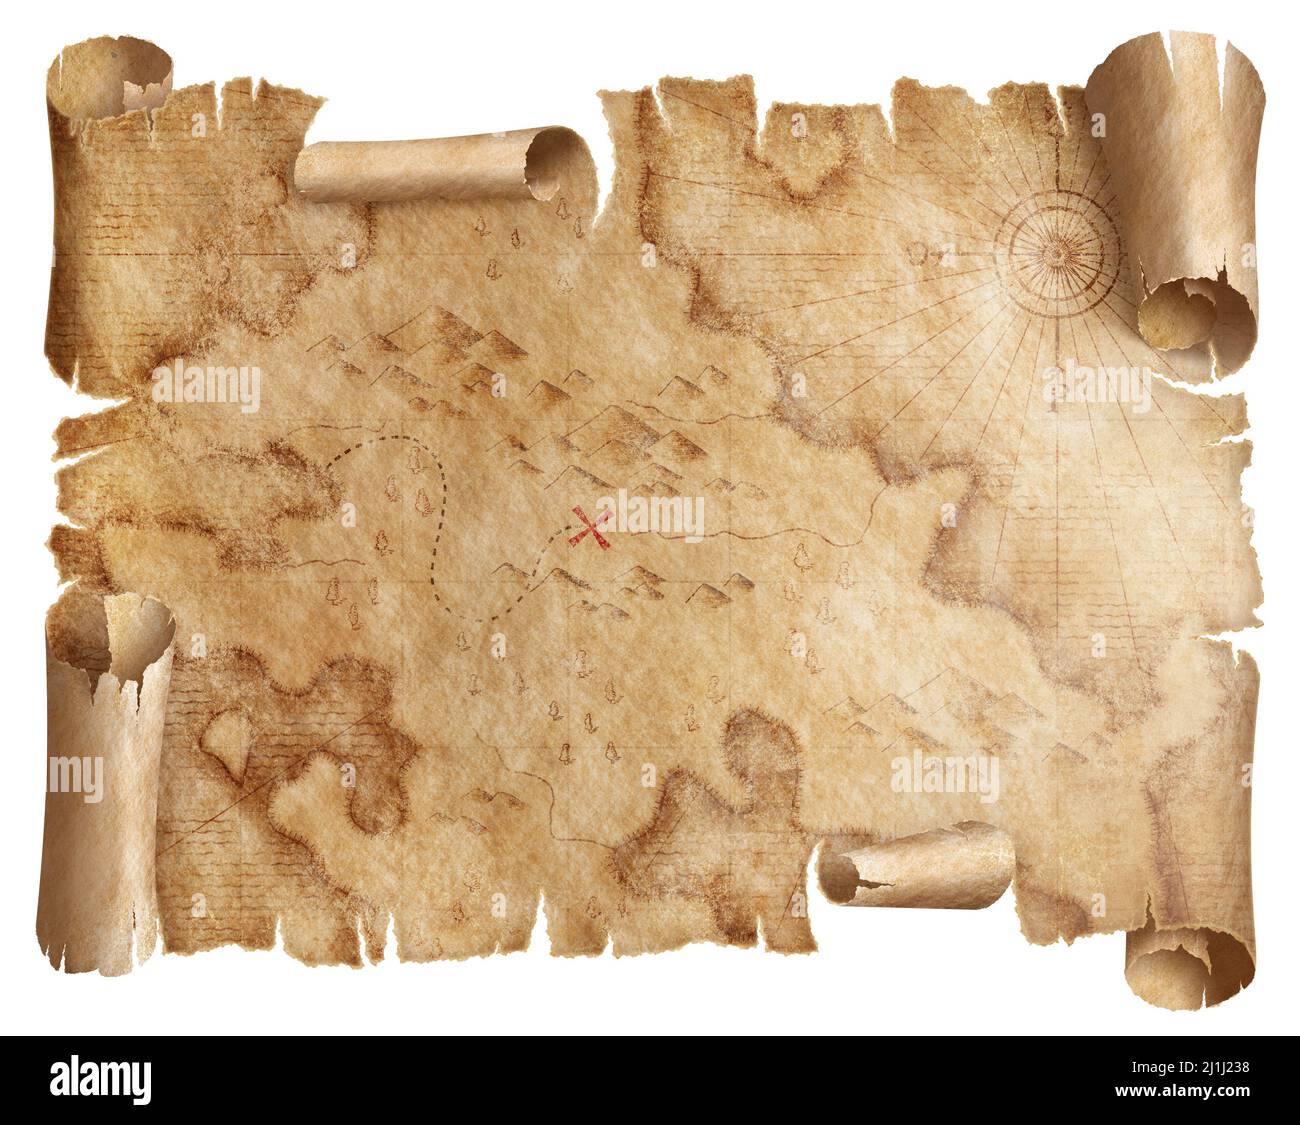 mapa náutico medieval de piratas con tesoros ocultos marca de desplazamiento aislado Foto de stock